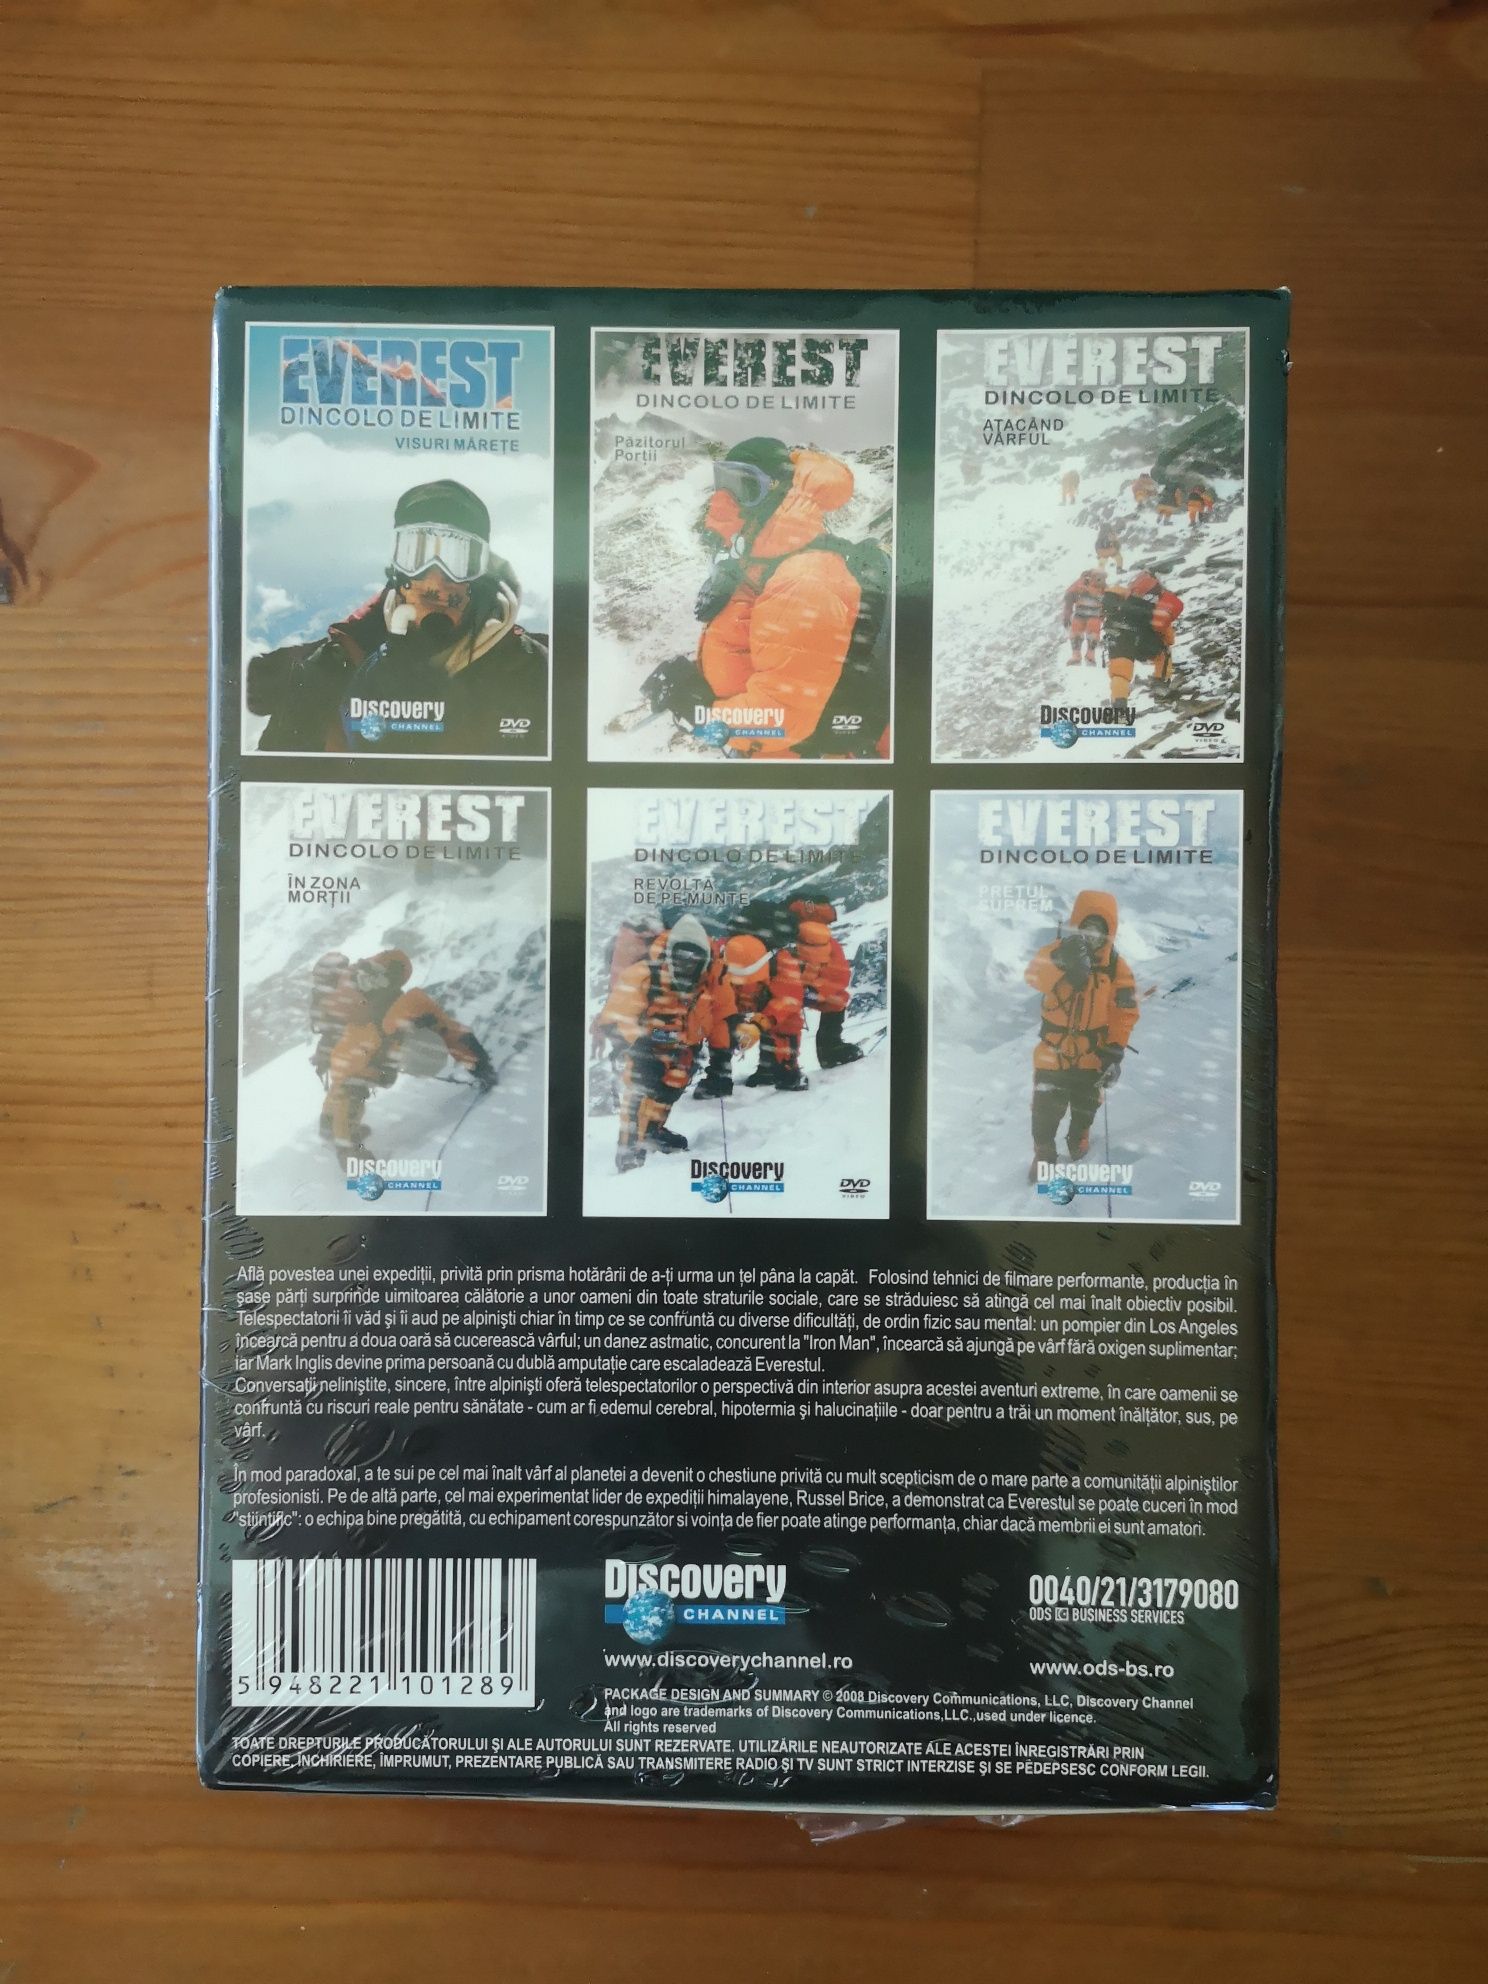 Everest - Dincolo de limite - 6 dvd